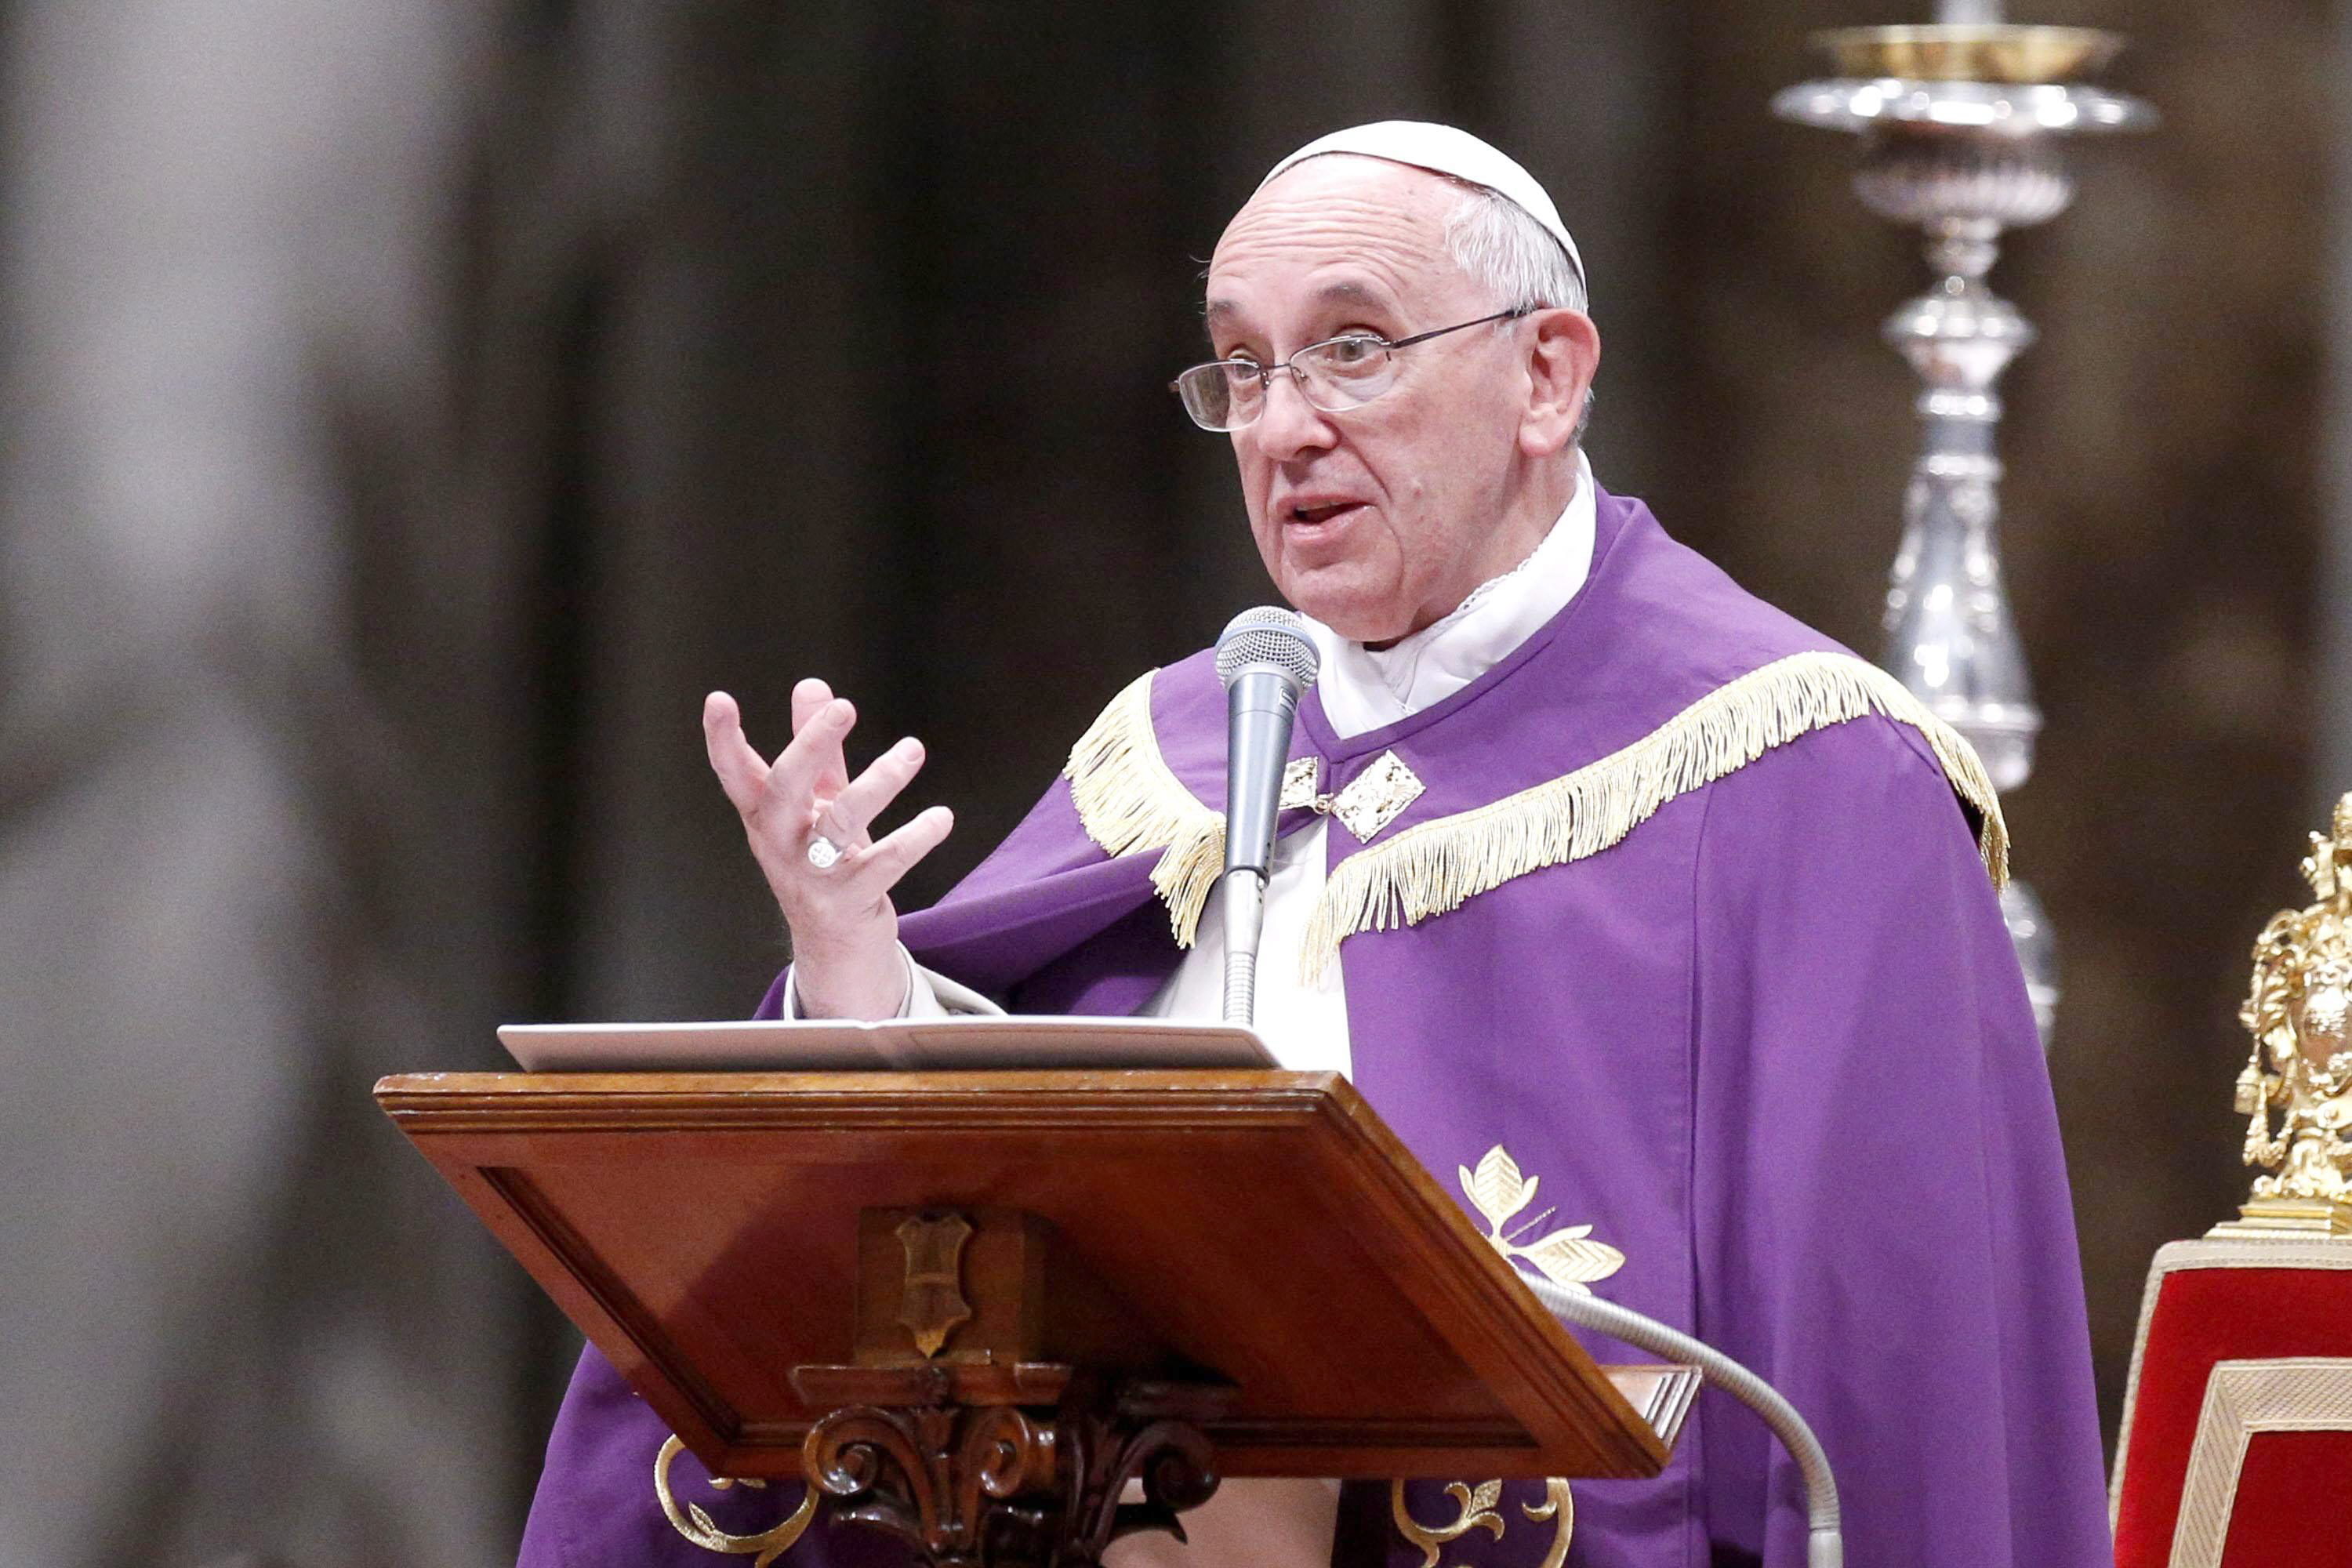 El Papa Francisco podría estar saliendo de noche de incógnito para ayudar a los pobres